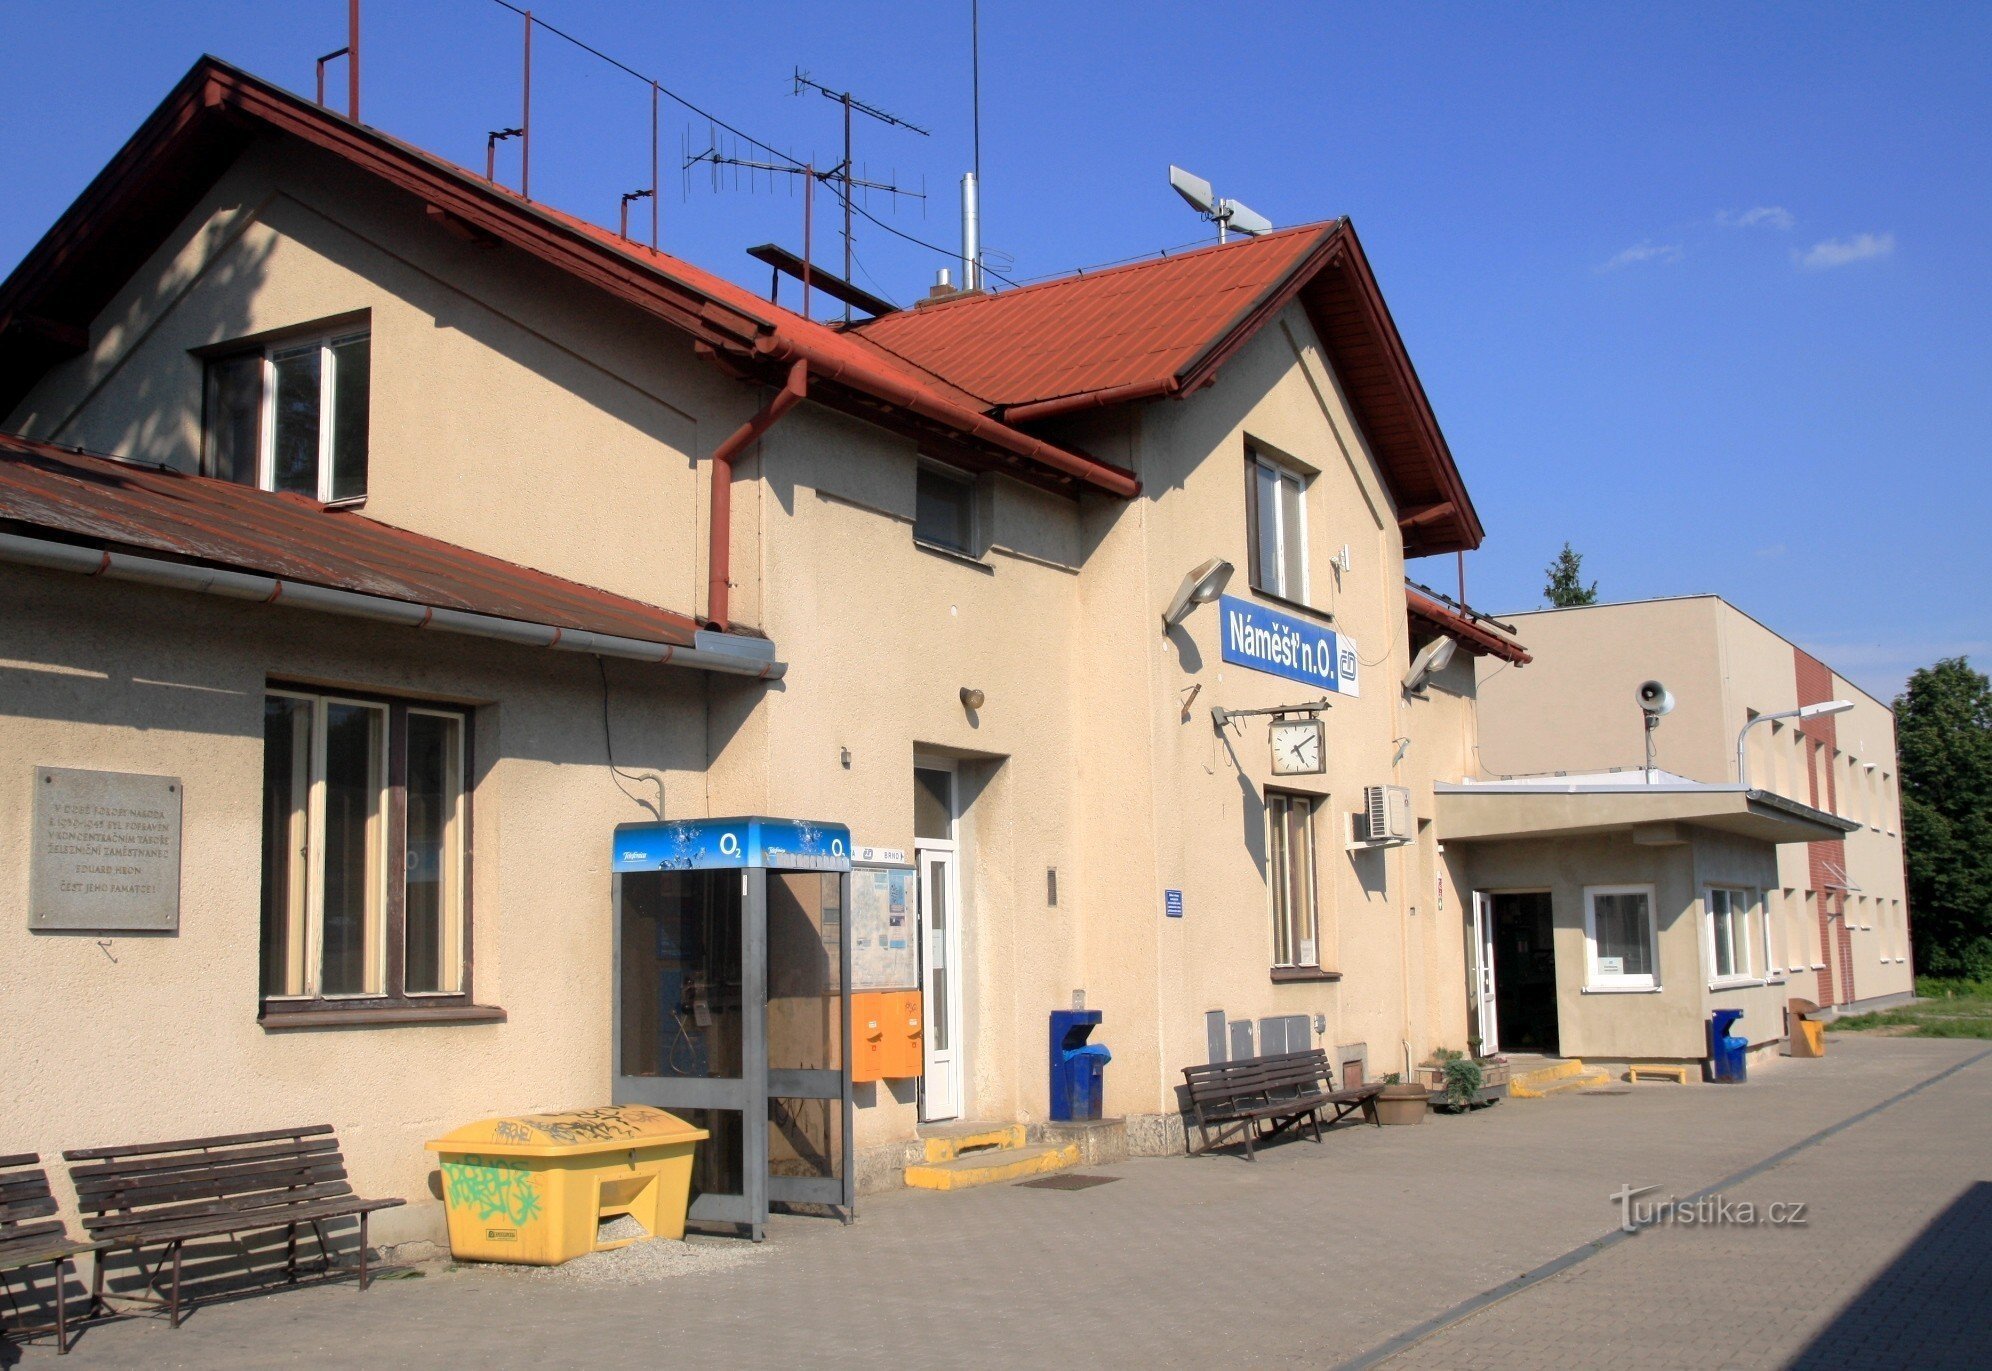 Náměšť nad Oslavou - estación de tren